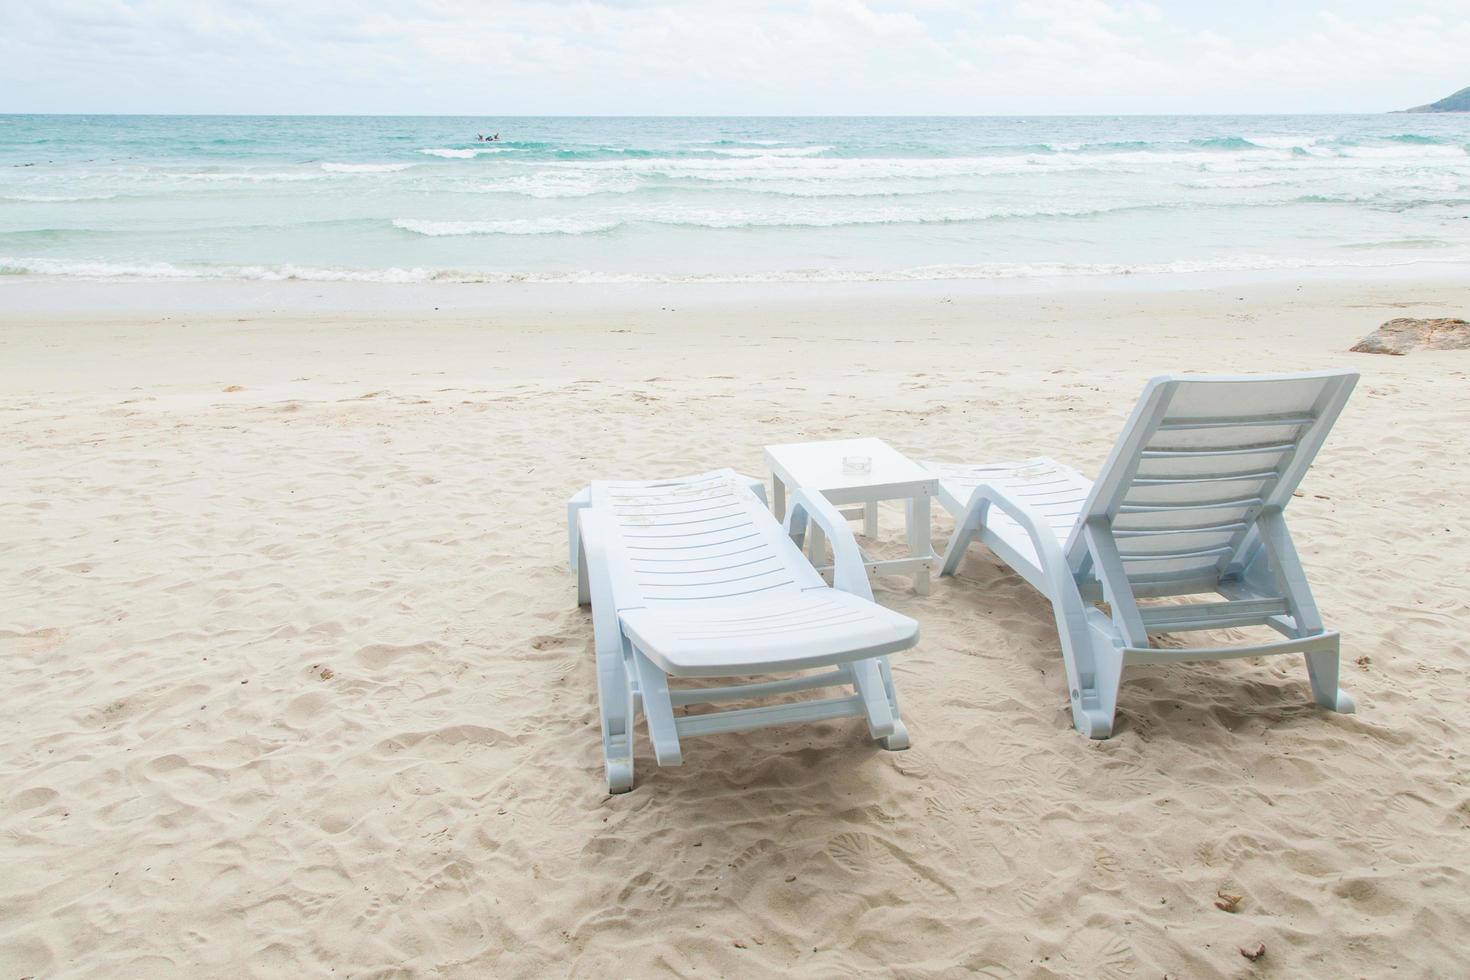 chaises longues blanches sur la plage photo